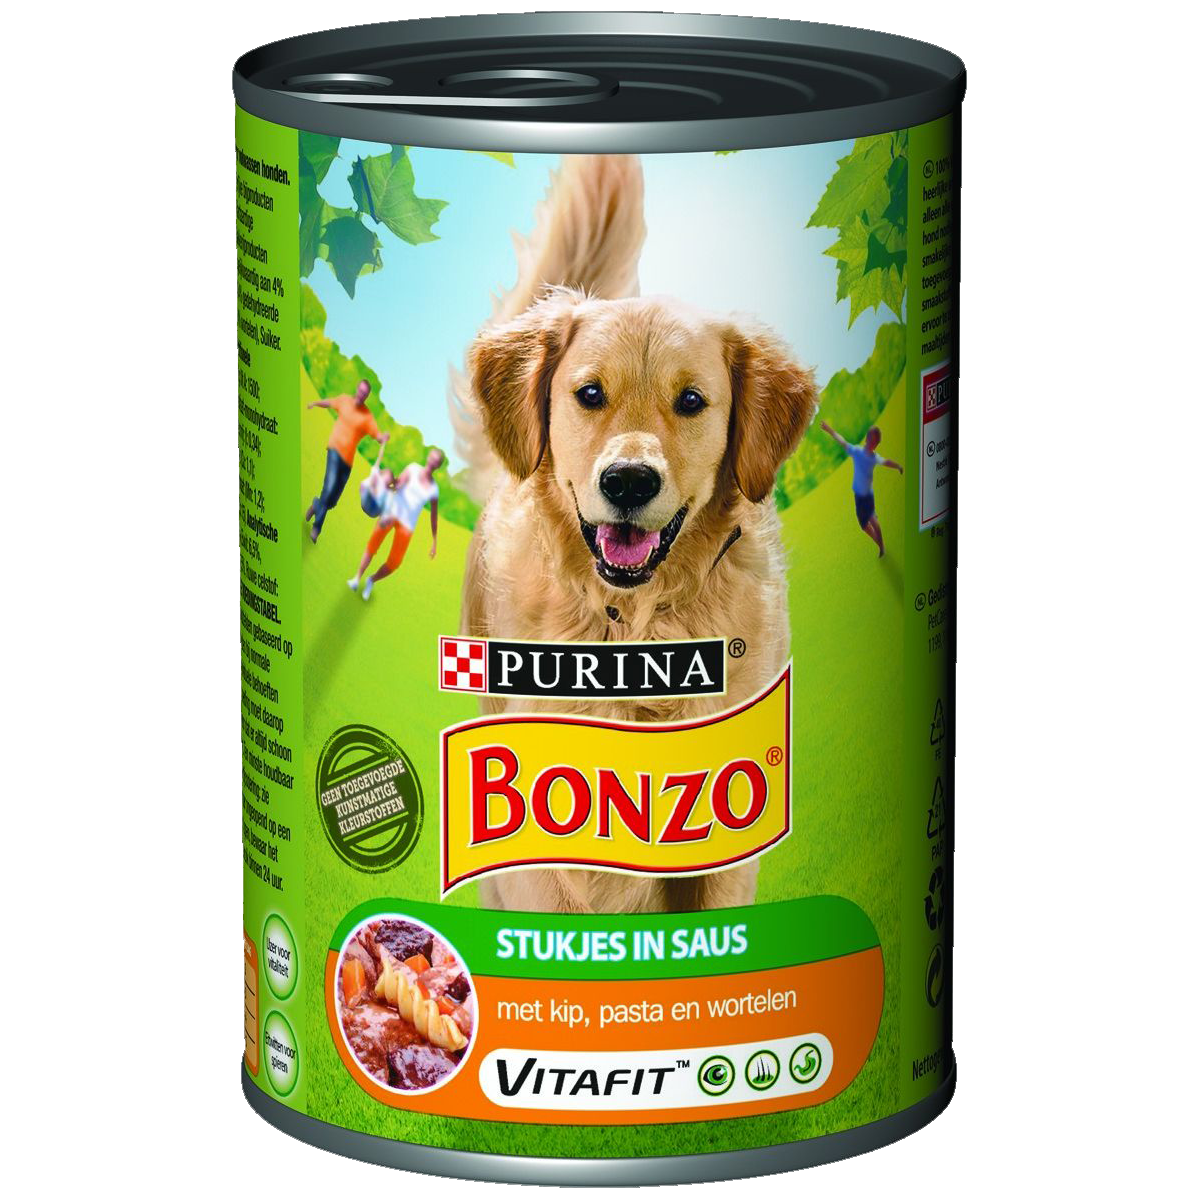 Bonzo met kip, pasta en wortelen 400g.